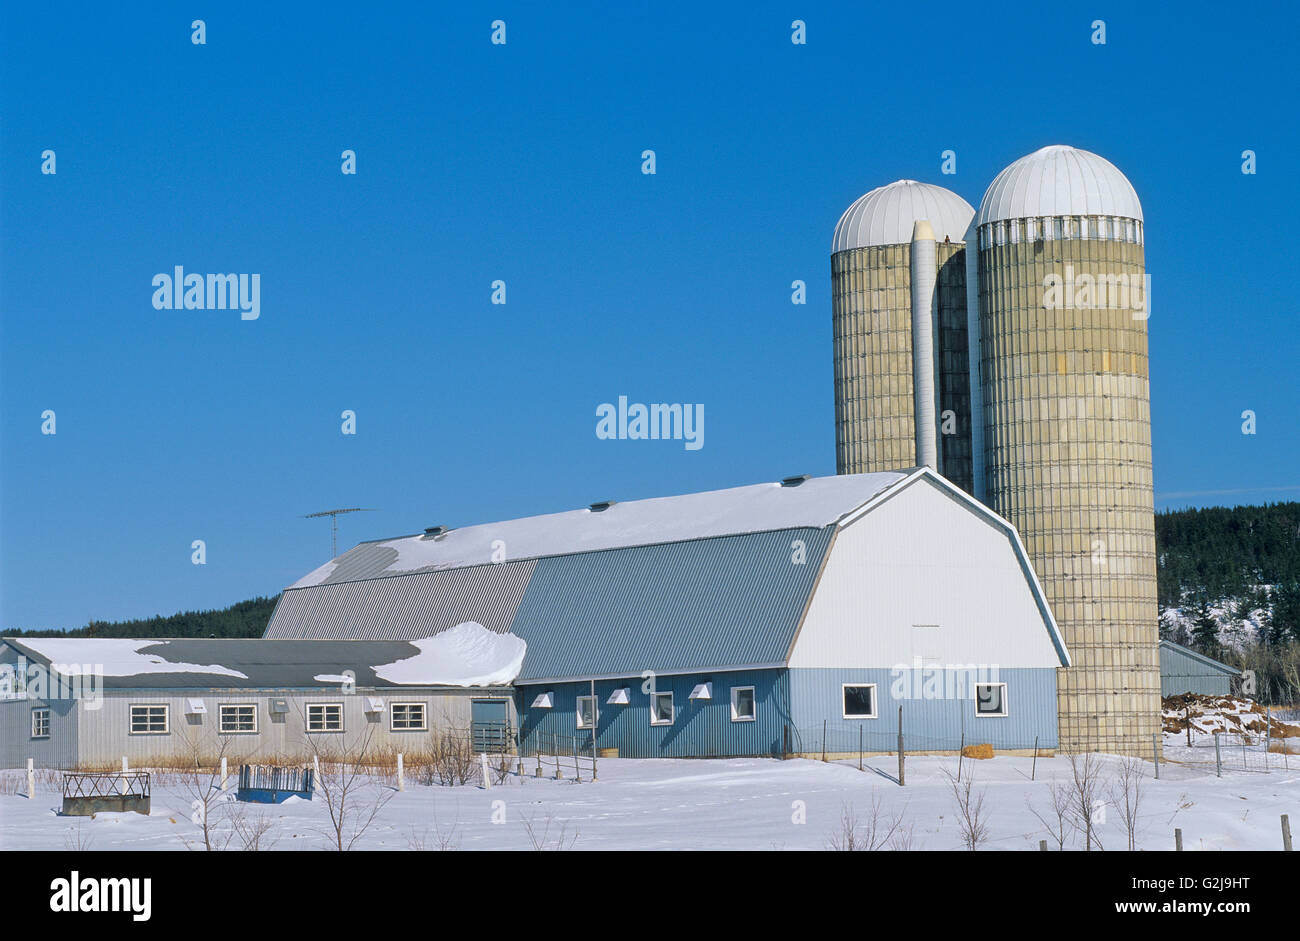 Granero y silo de granja lechera en invierno Ville-Marie Quebec Canada Foto de stock